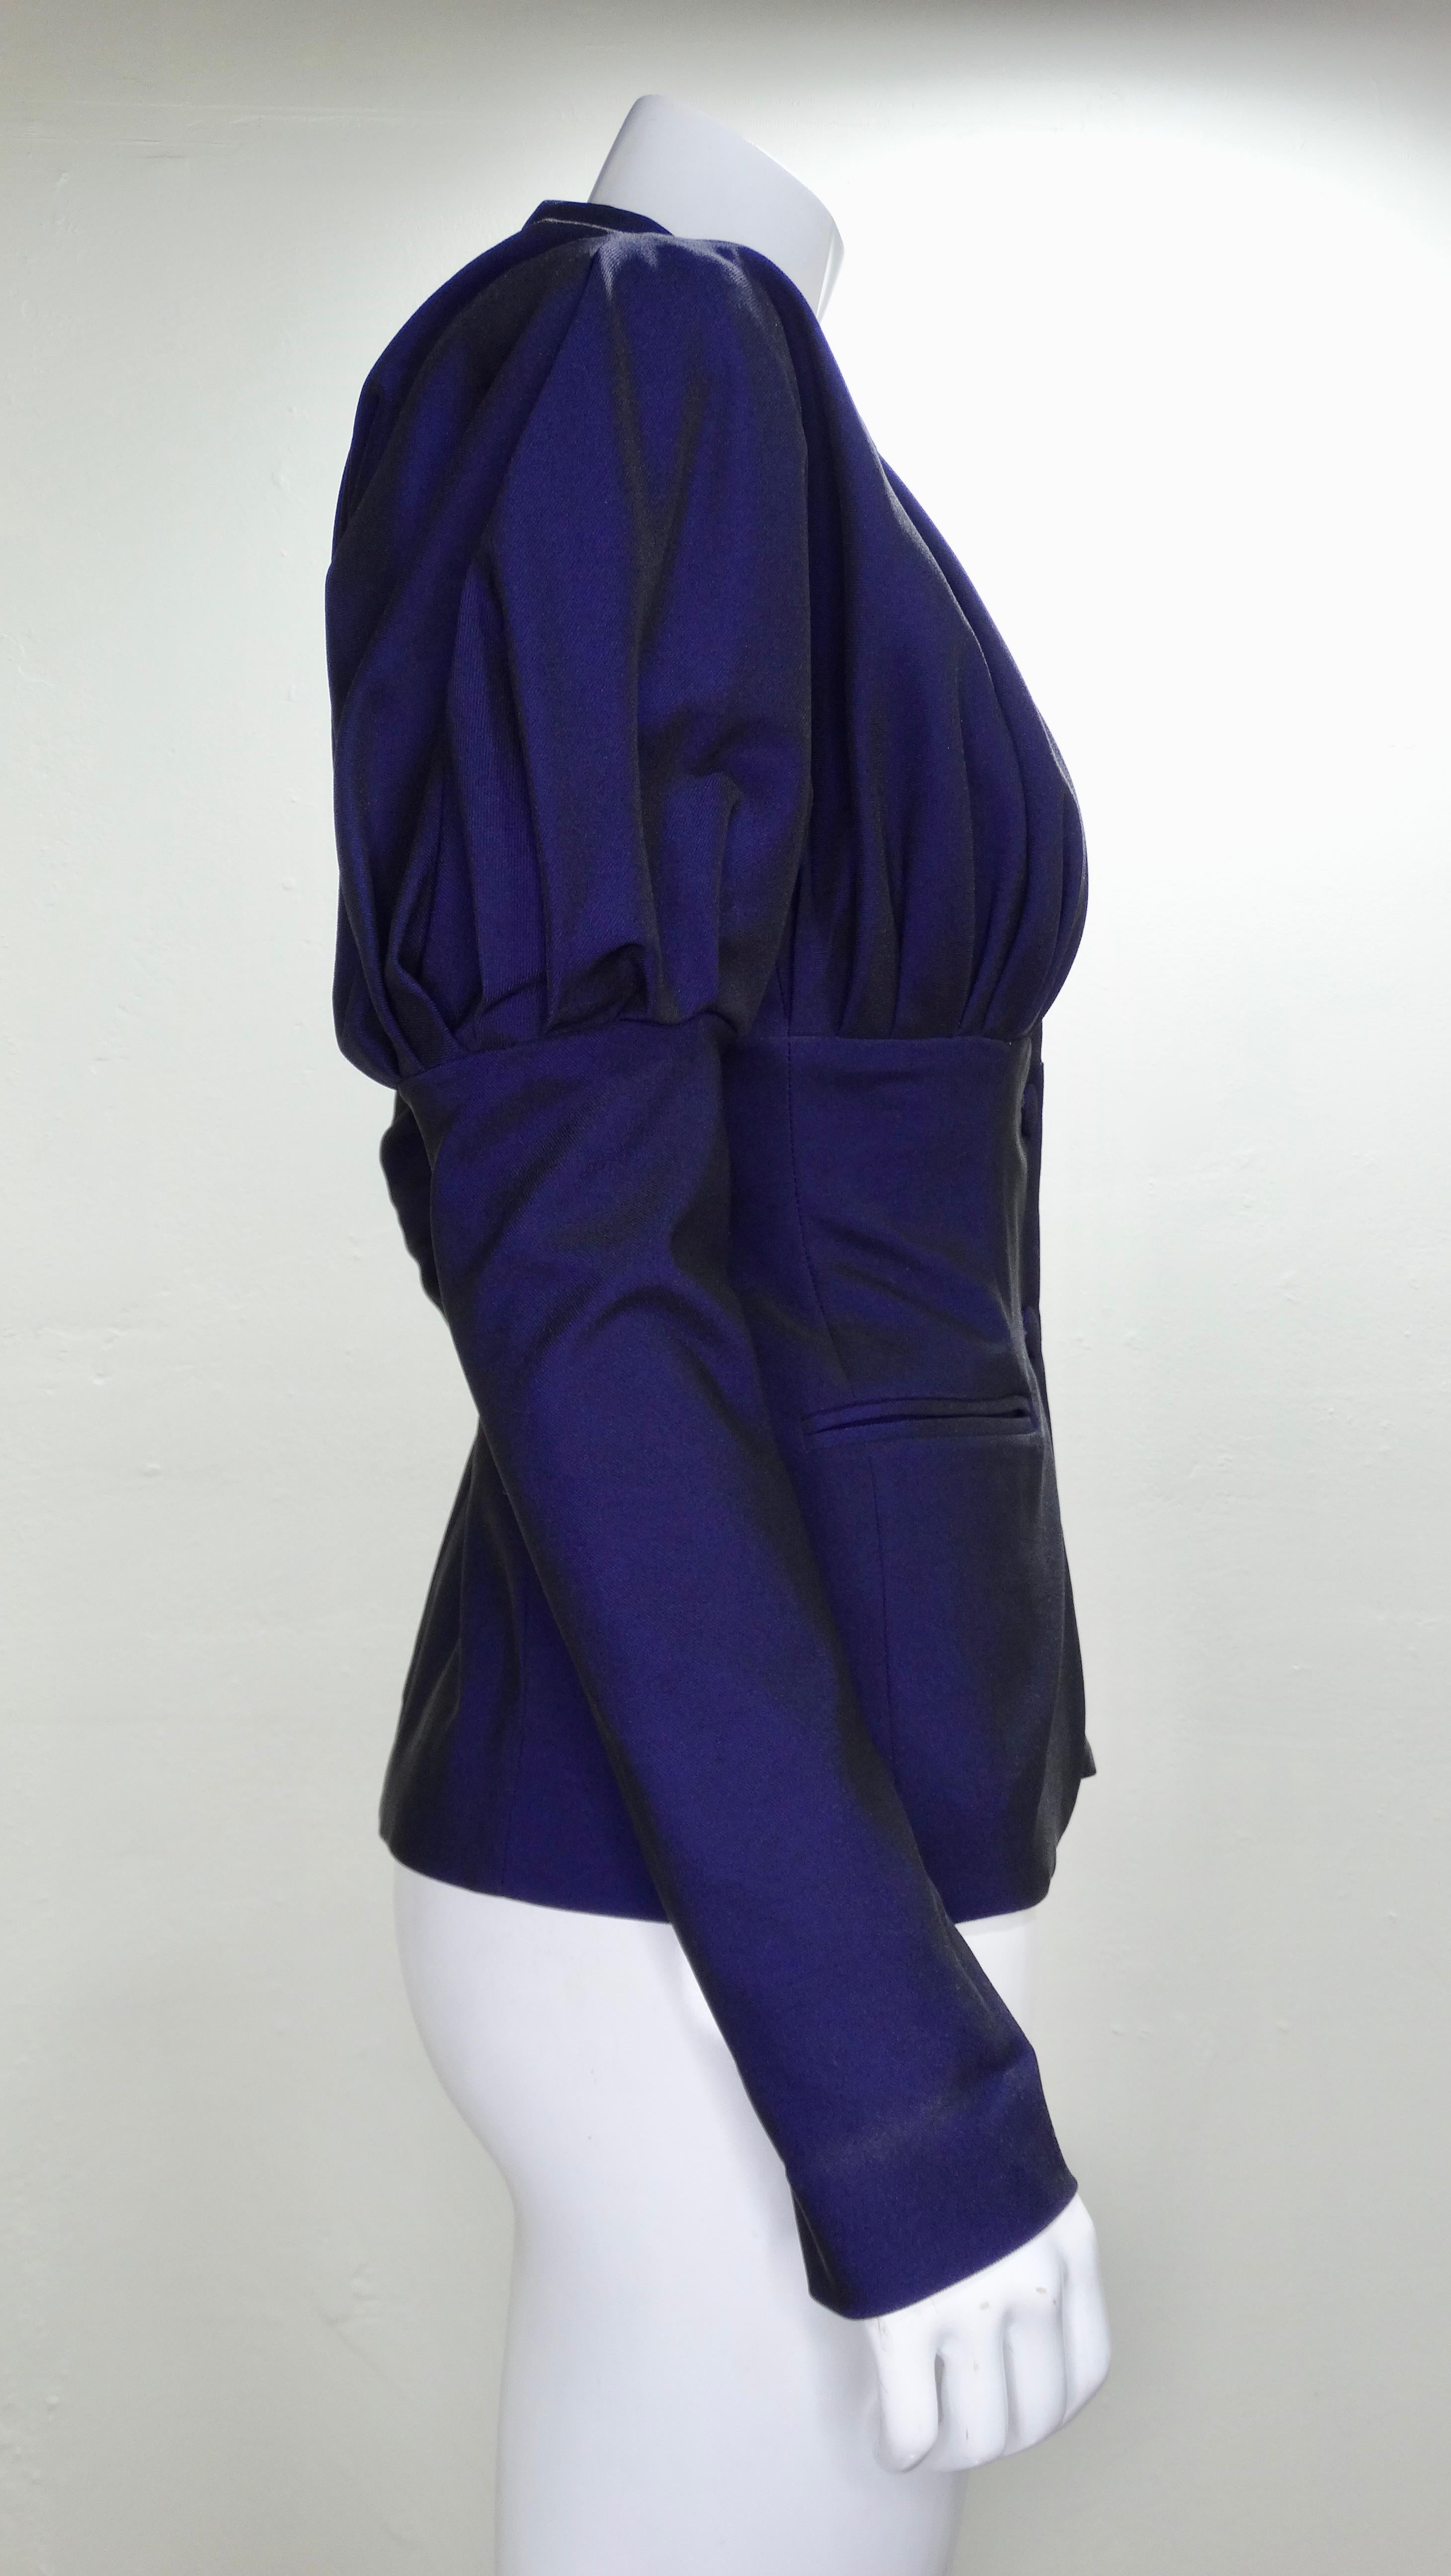 Datant de la fin des années 1980, ce superbe blazer Romeo Gigli de style victorien présente une belle couleur violette irisée profonde et de grandes manches gigot. Les plis au dos de l'empiècement et sur le buste créent une superbe silhouette